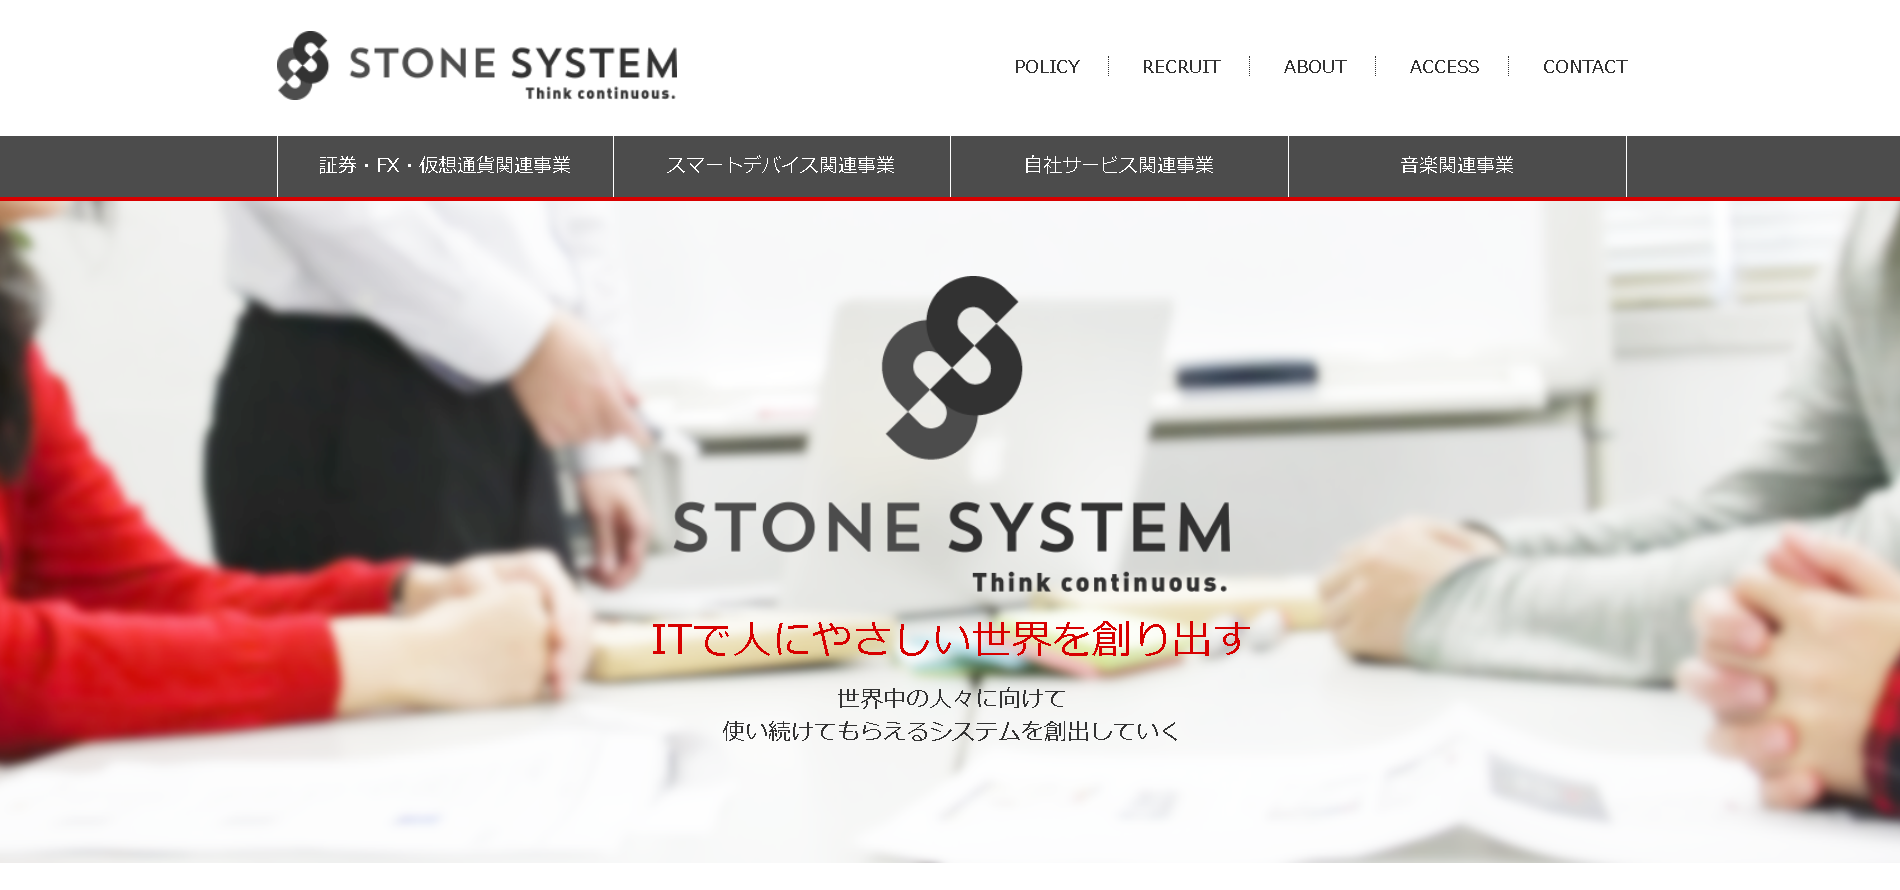 株式会社ストーンシステムのストーンシステムサービス